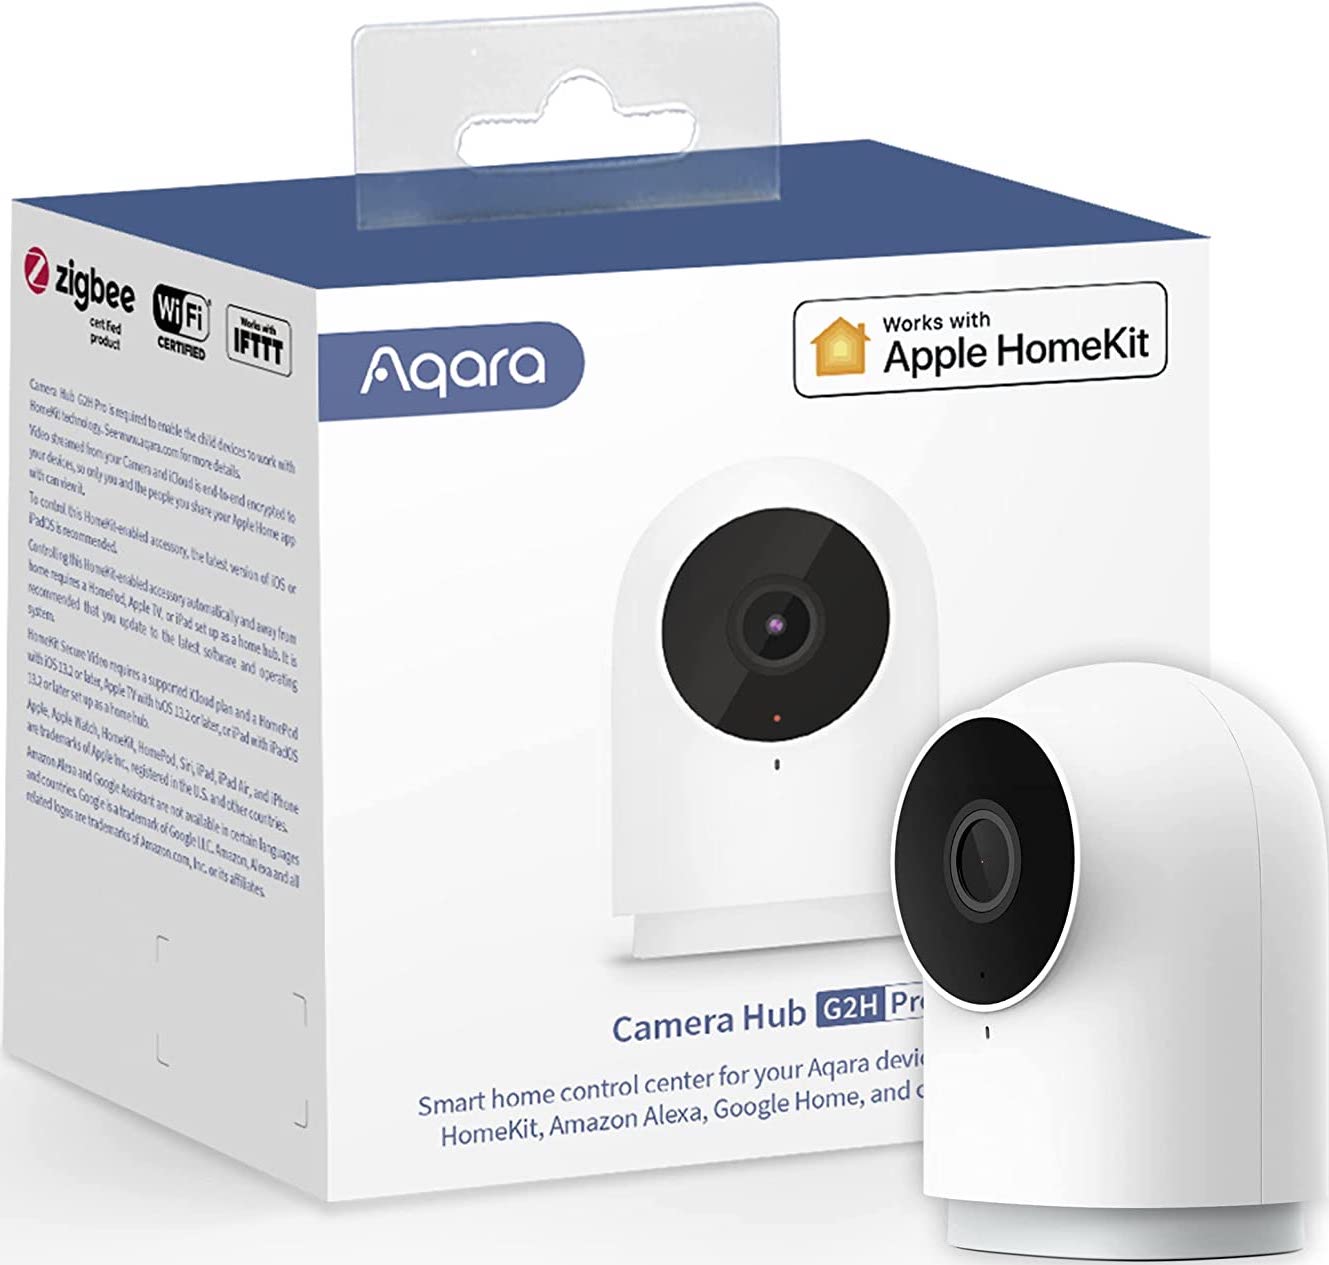 Aqara Camera Hub G2h Pro and packaging